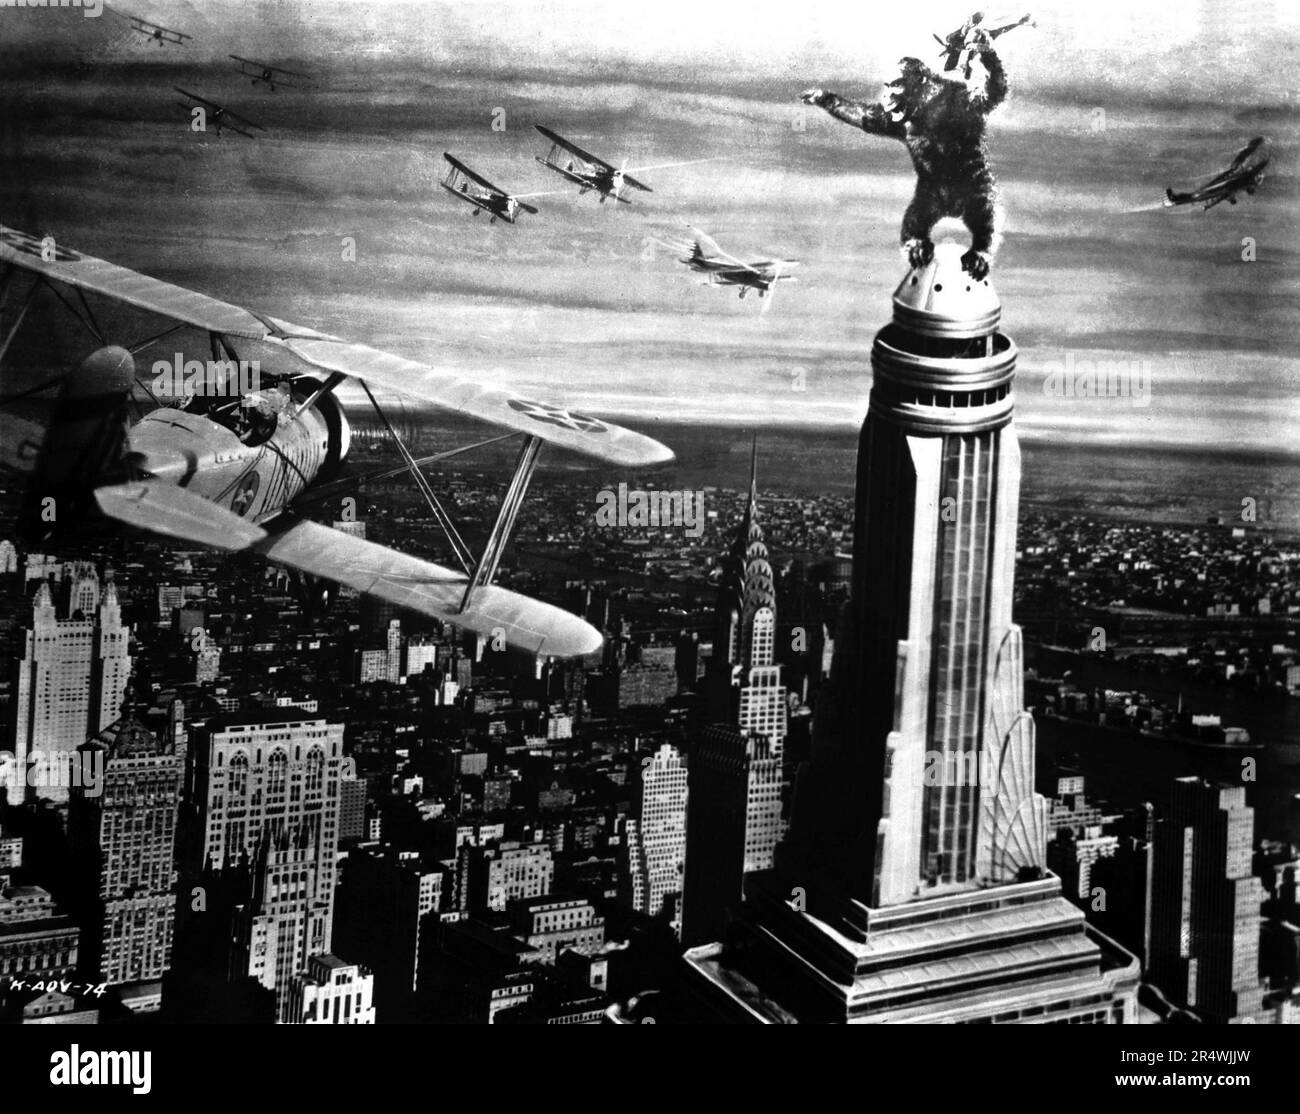 King Kong ist ein 1933 American fantasy Monster/Abenteuer Film. Es Sterne Fay Wray, Bruce Cabot, Robert Armstrong, und in New York City eröffnet am 2. März 1933 begeisterte Kritiken. Der Film erzählt von einem gigantischen, Insel lebenden Affen namens Kong wer stirbt bei dem Versuch, eine schöne junge Frau zu besitzen. Hongkong ist für seine Stop-motion Animation von Willis O'Brien und seine musikalische Kerbe von Max Steiner. King Kong wird häufig als eine der kultigsten Filme in der Geschichte des Kinos bezeichnet. Stockfoto